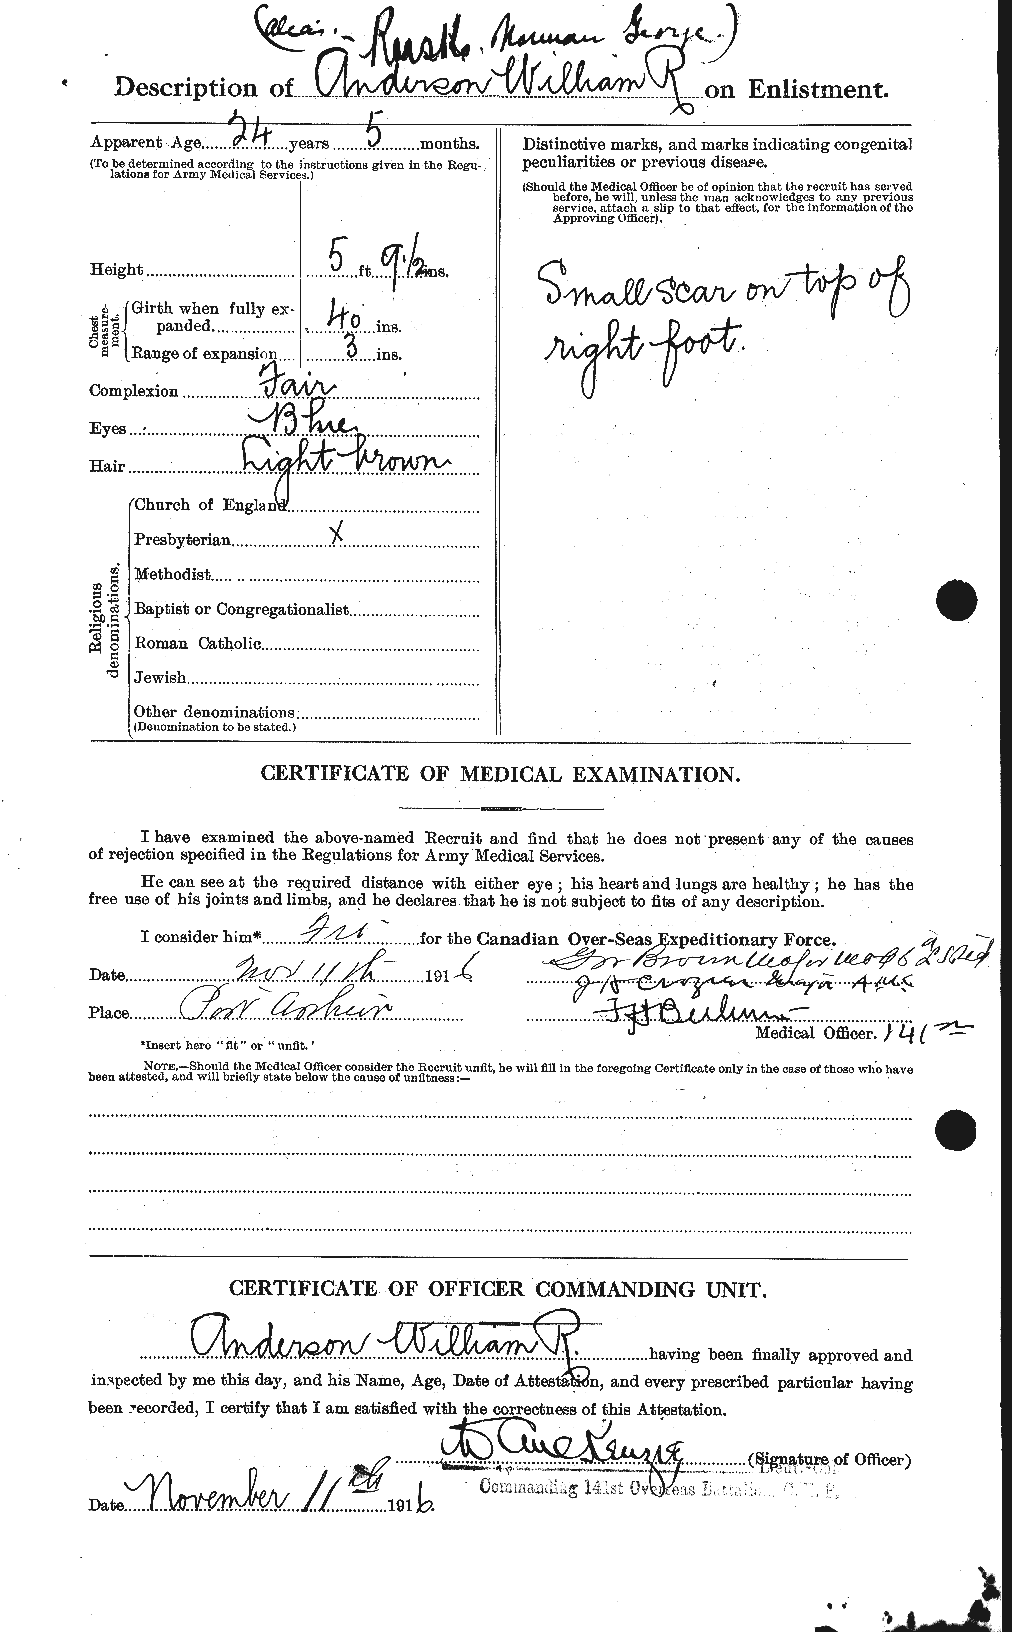 Dossiers du Personnel de la Première Guerre mondiale - CEC 616878b